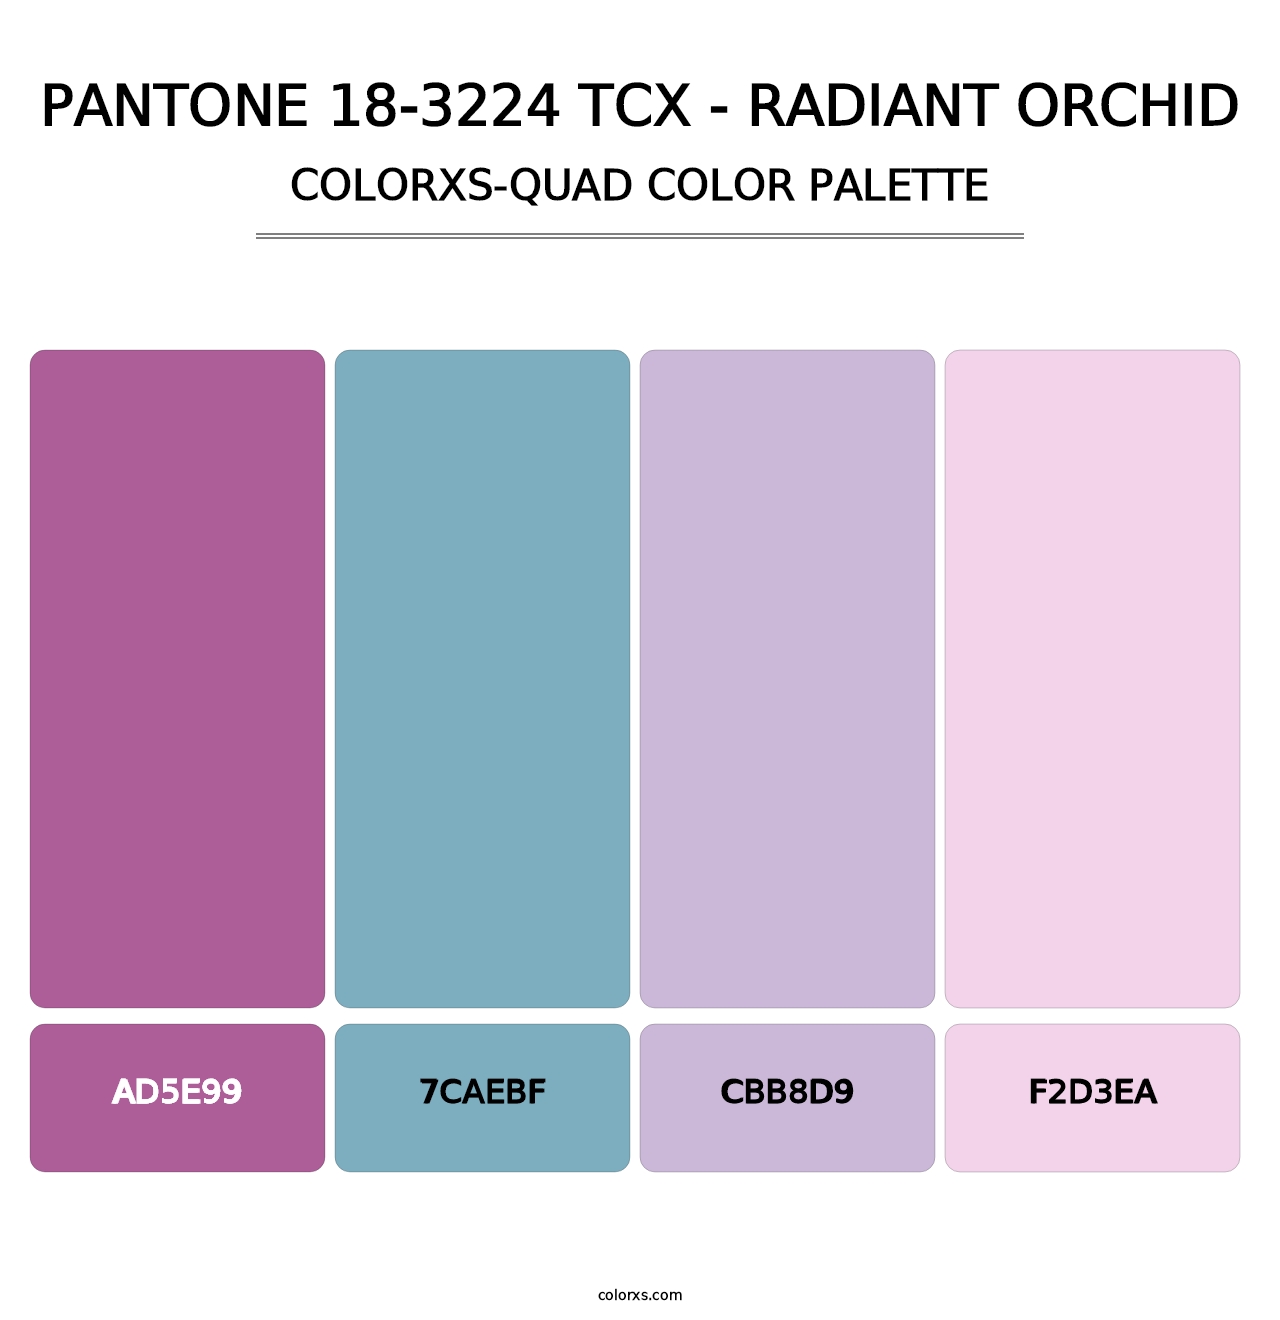 PANTONE 18-3224 TCX - Radiant Orchid - Colorxs Quad Palette